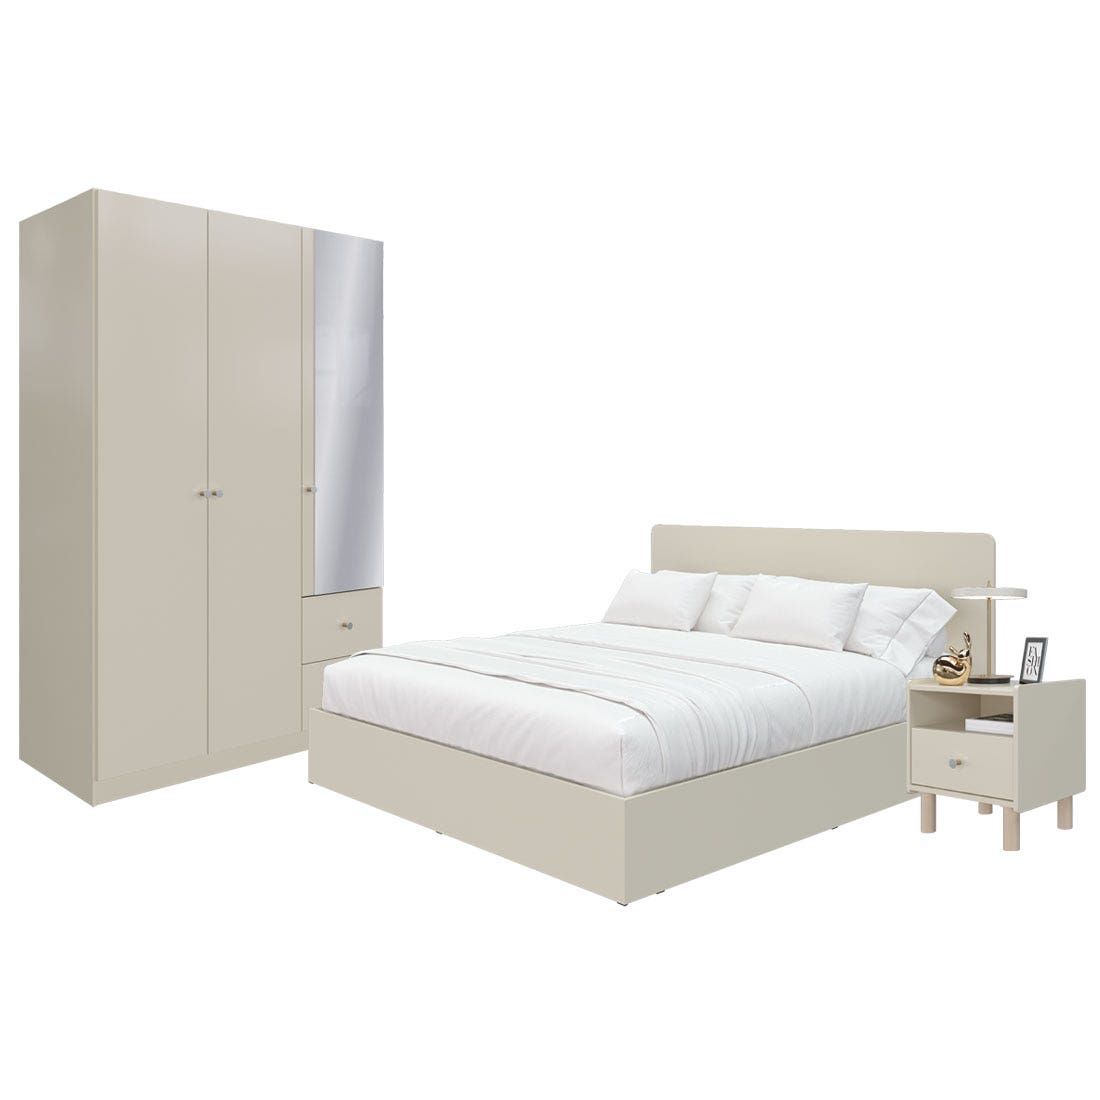 ชุดห้องนอน ขนาด 5 ฟุต  รุ่น Blanca & ตู้เสื้อผ้า 134 ซม. พร้อมตู้ข้างเตียง สีครีม01